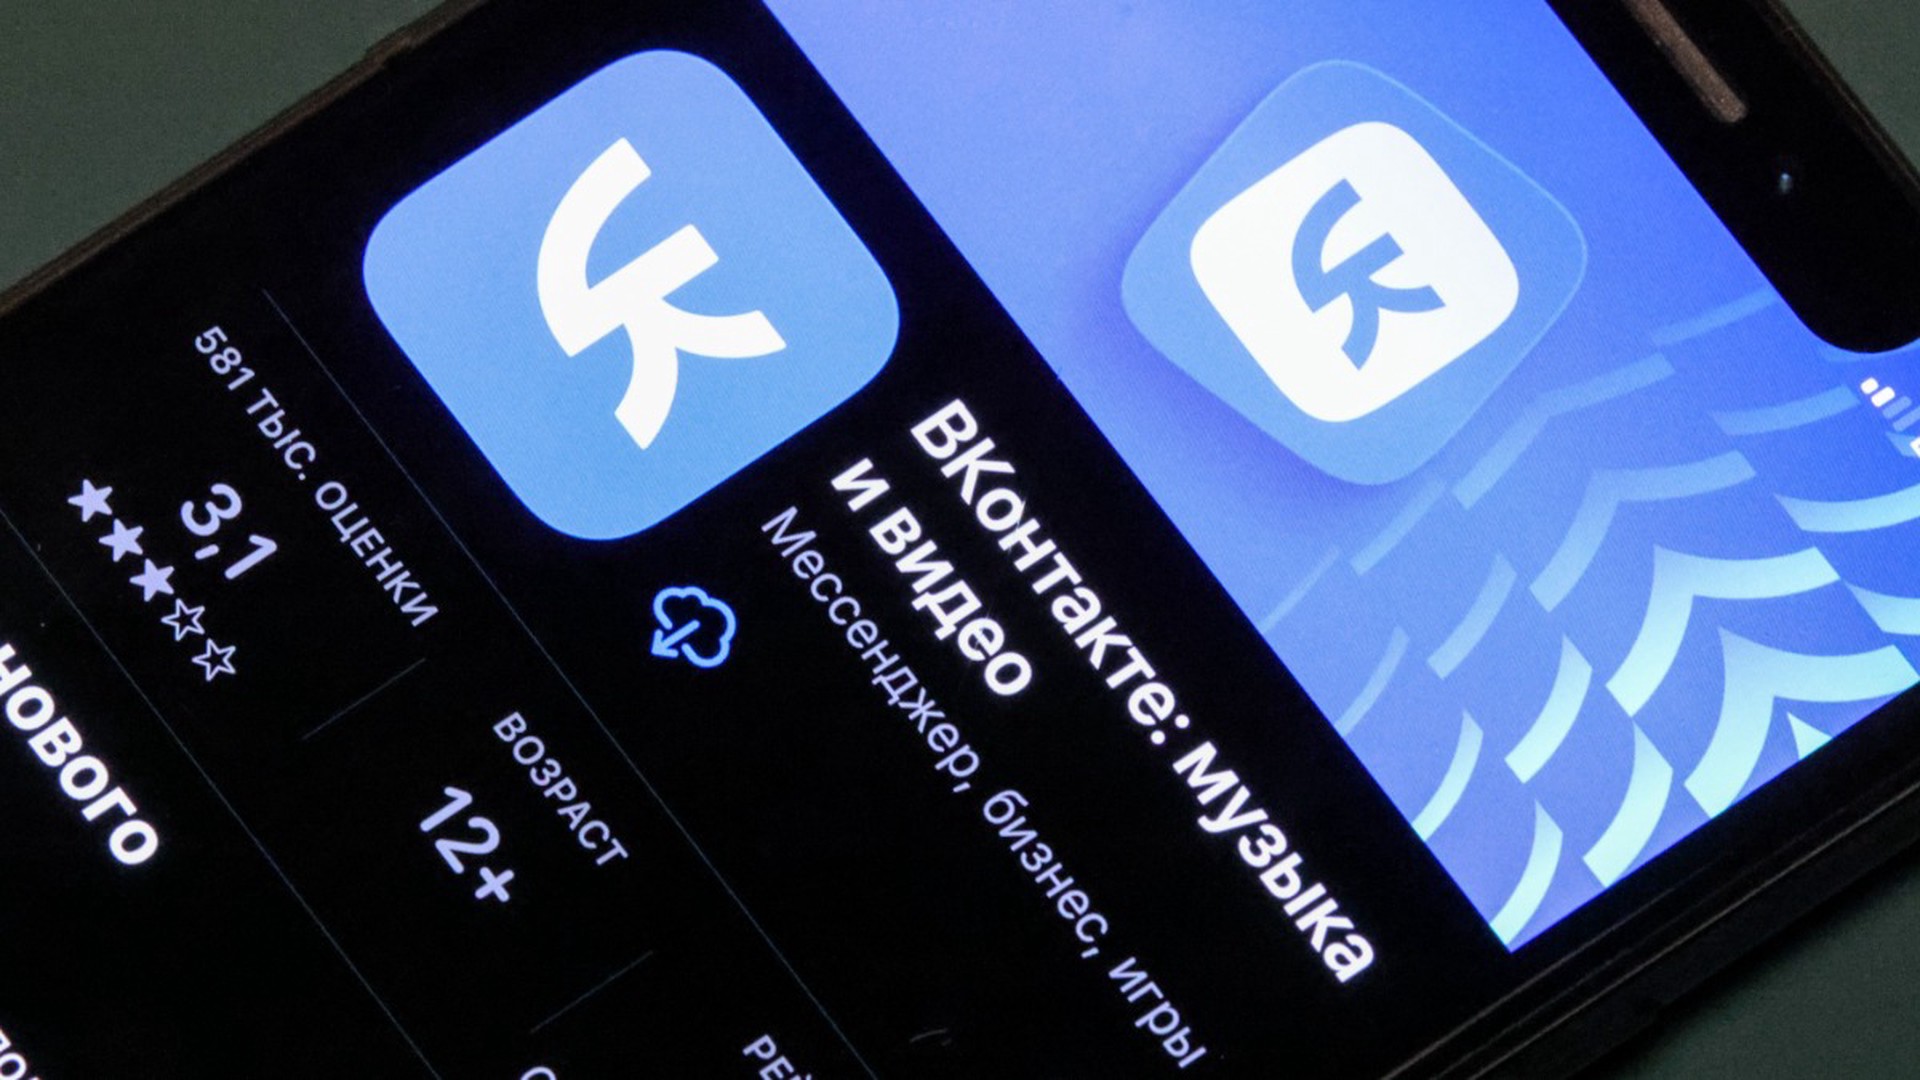 В работе «ВКонтакте» произошёл массовый сбой